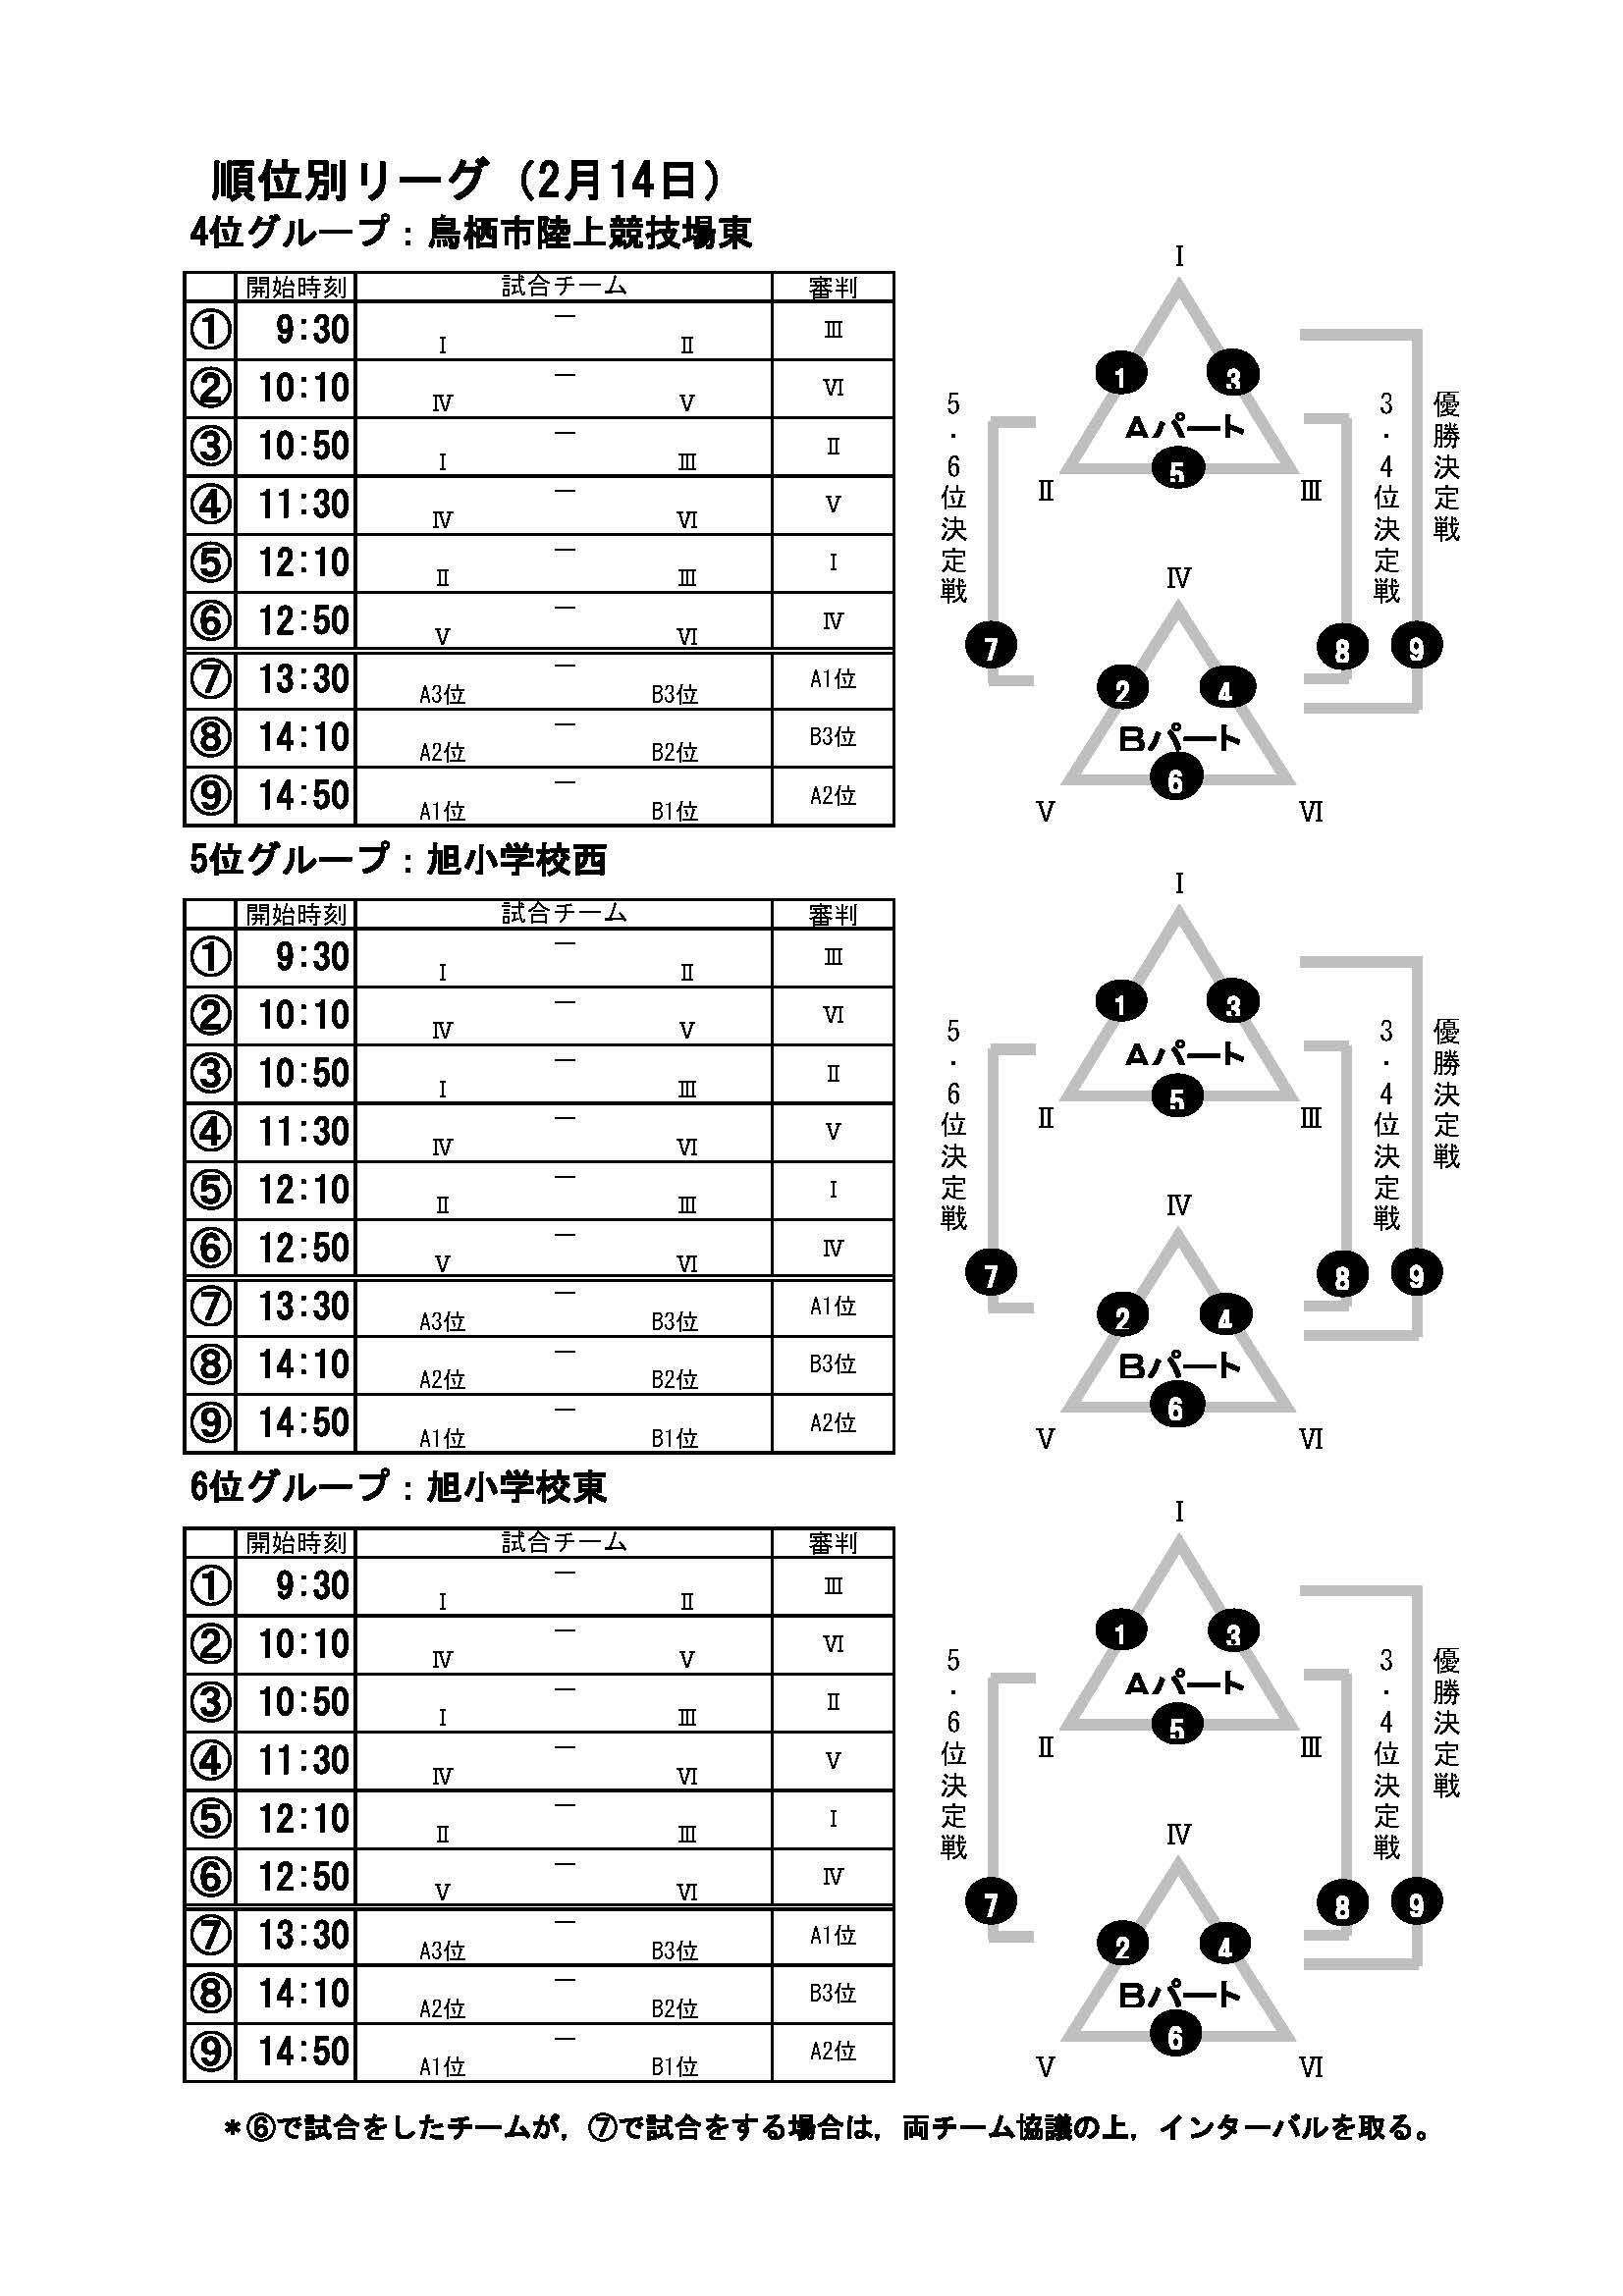 第27回 順位別リーグ日程 三戸杯少年サッカー大会公式サイト